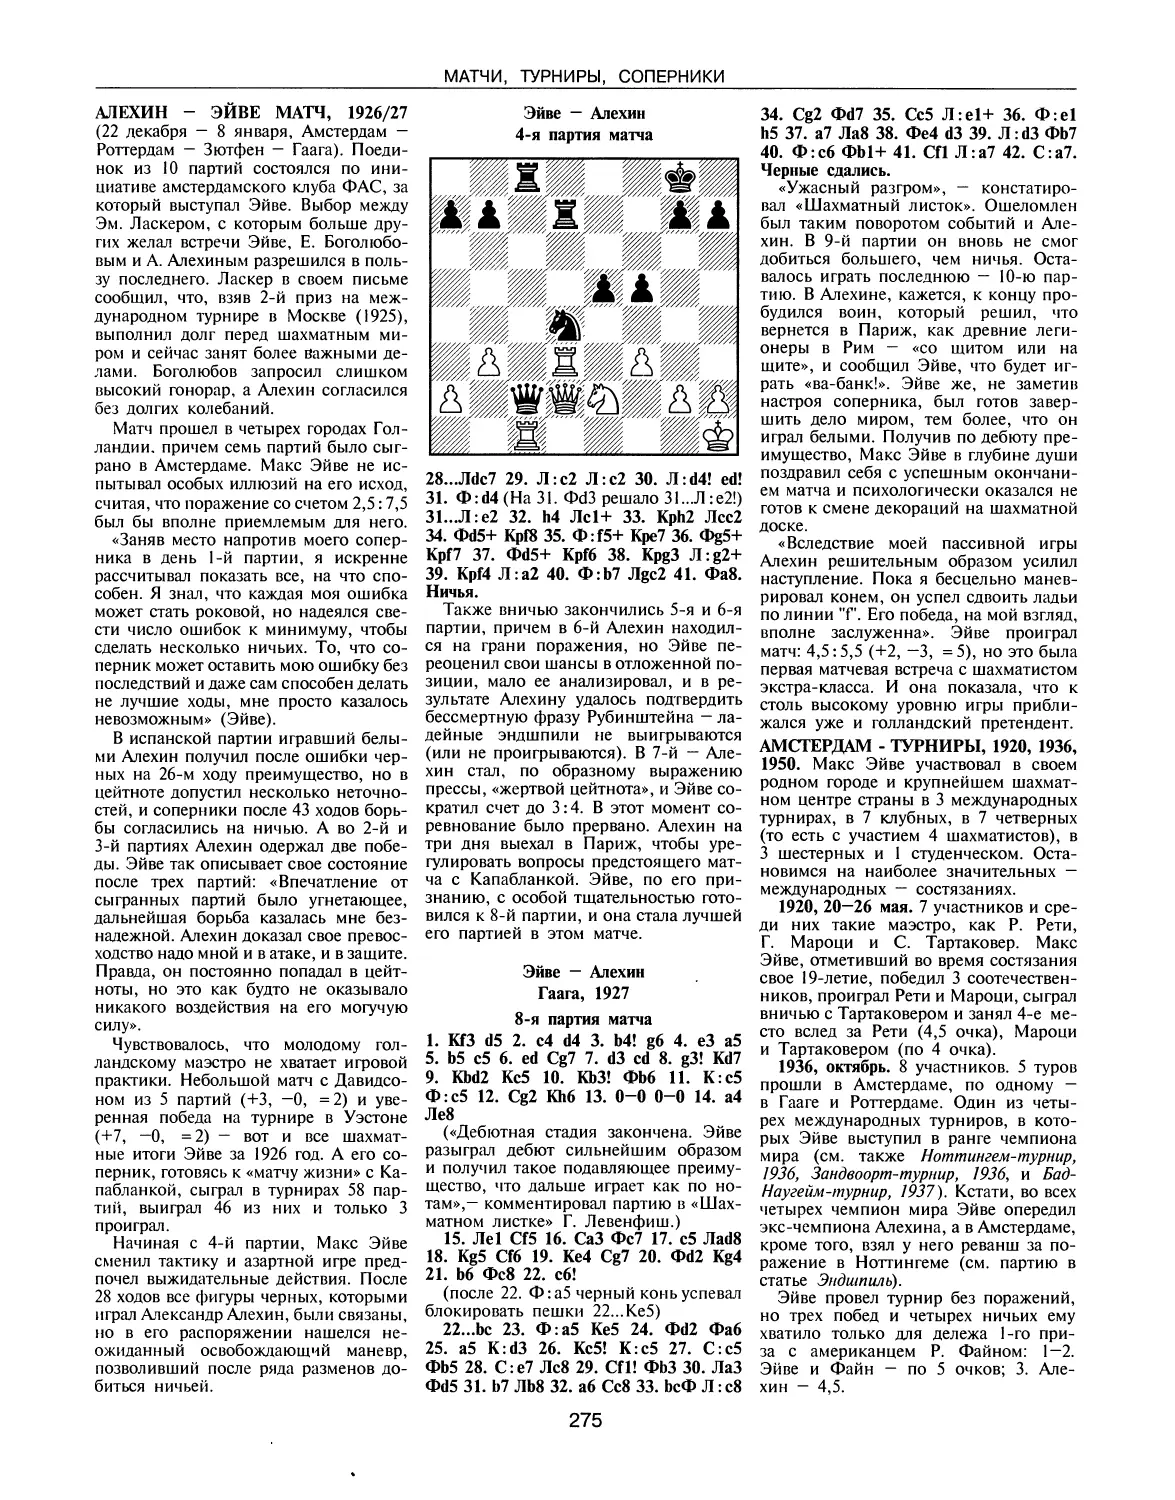 Алехин - Эйве матч, 1926/27
Амстердам-турниры, 1920, 1936, 1950